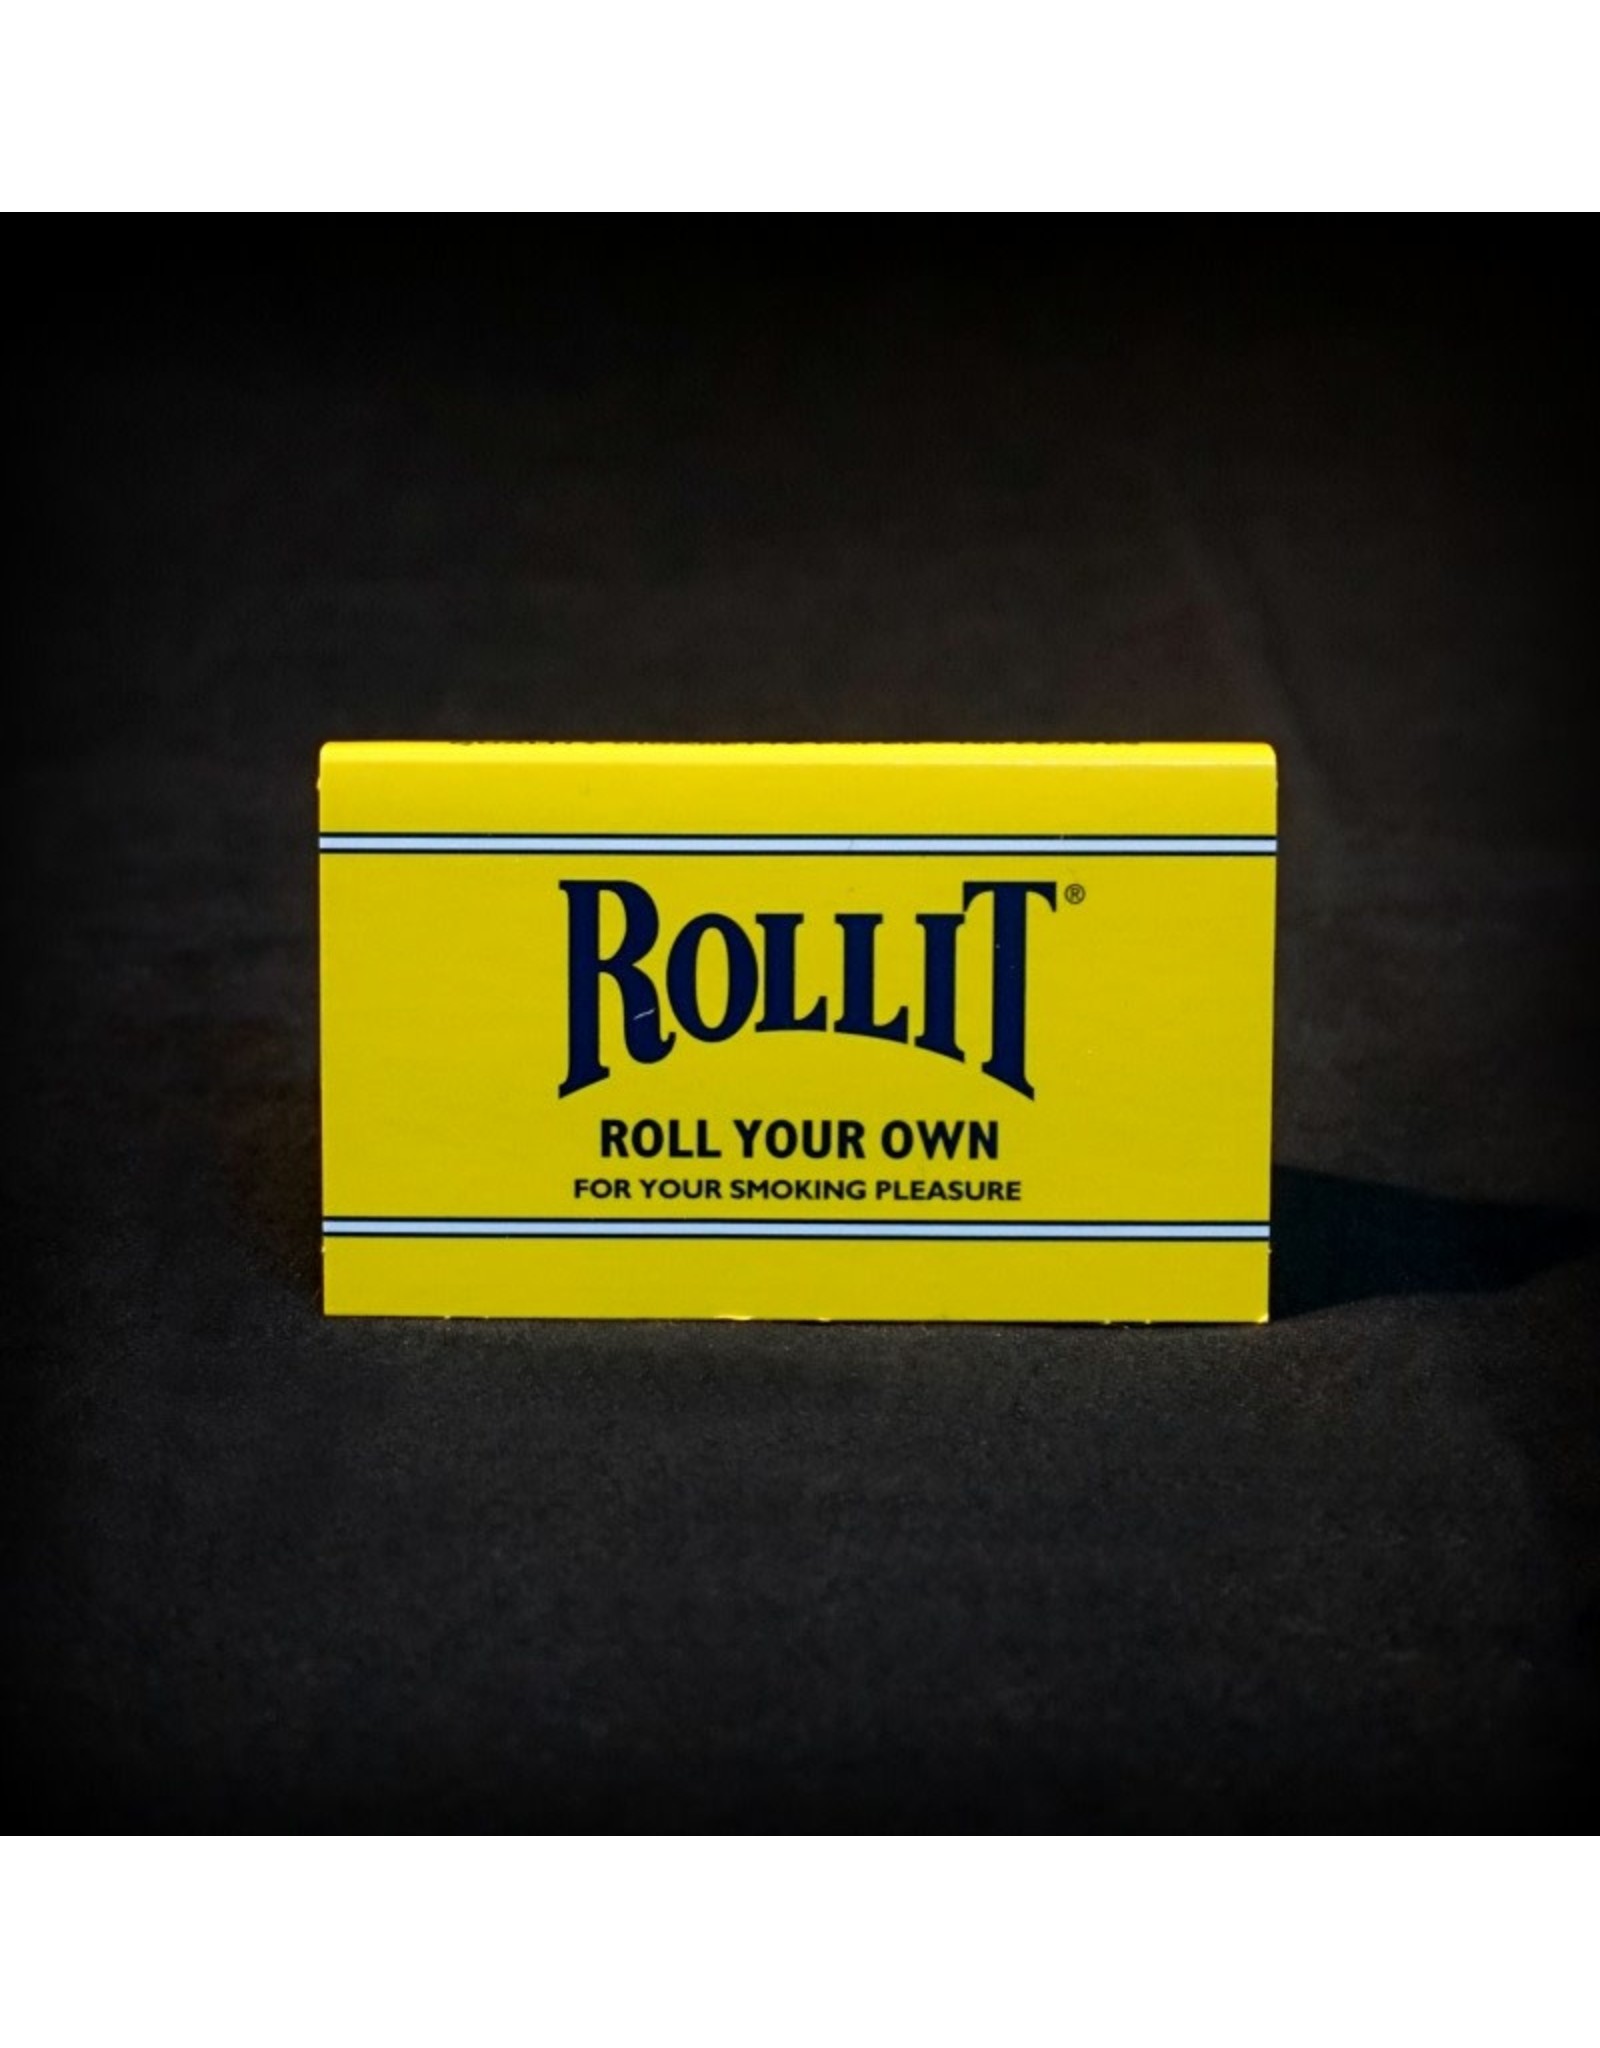 Roll It